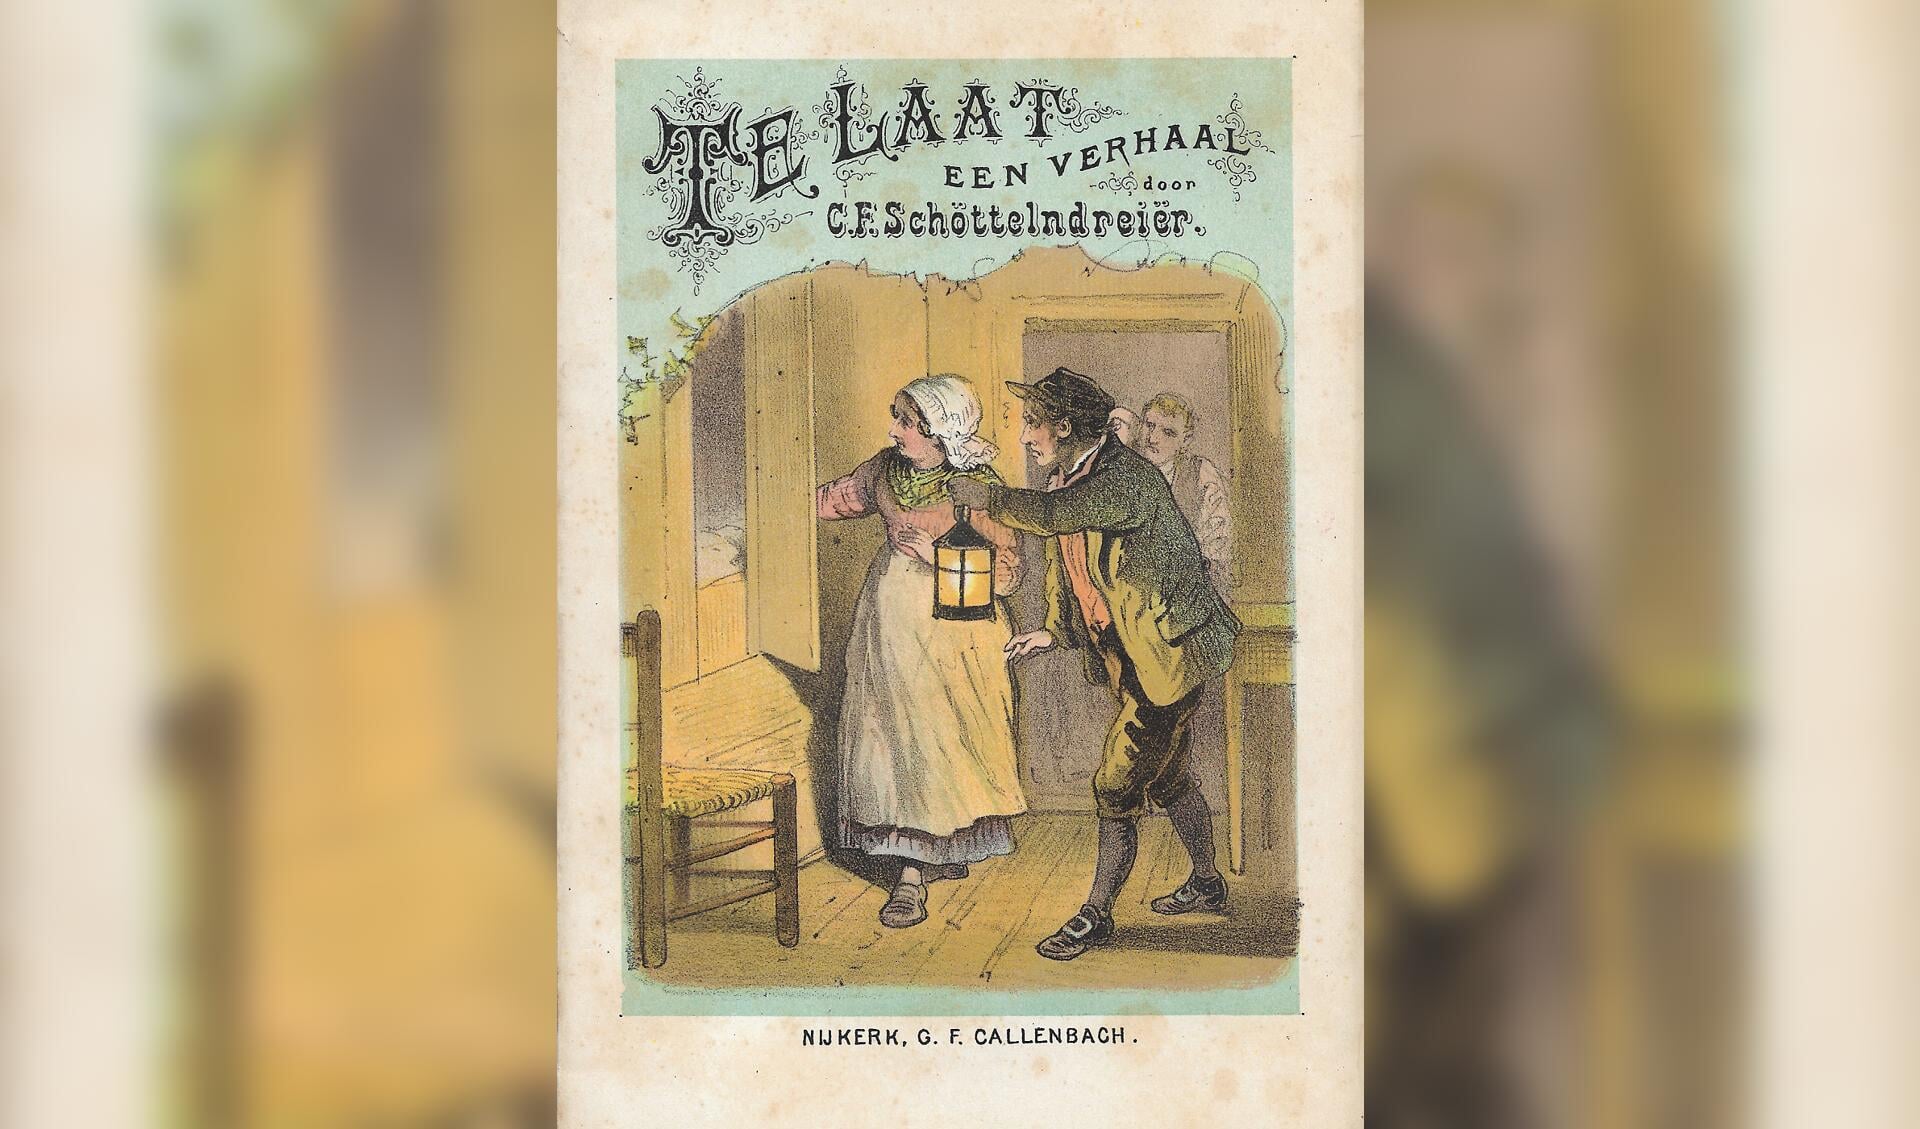 Boek uit de schenking van het archief van Uitgeverij Callenbach aan Museum
Nijkerk